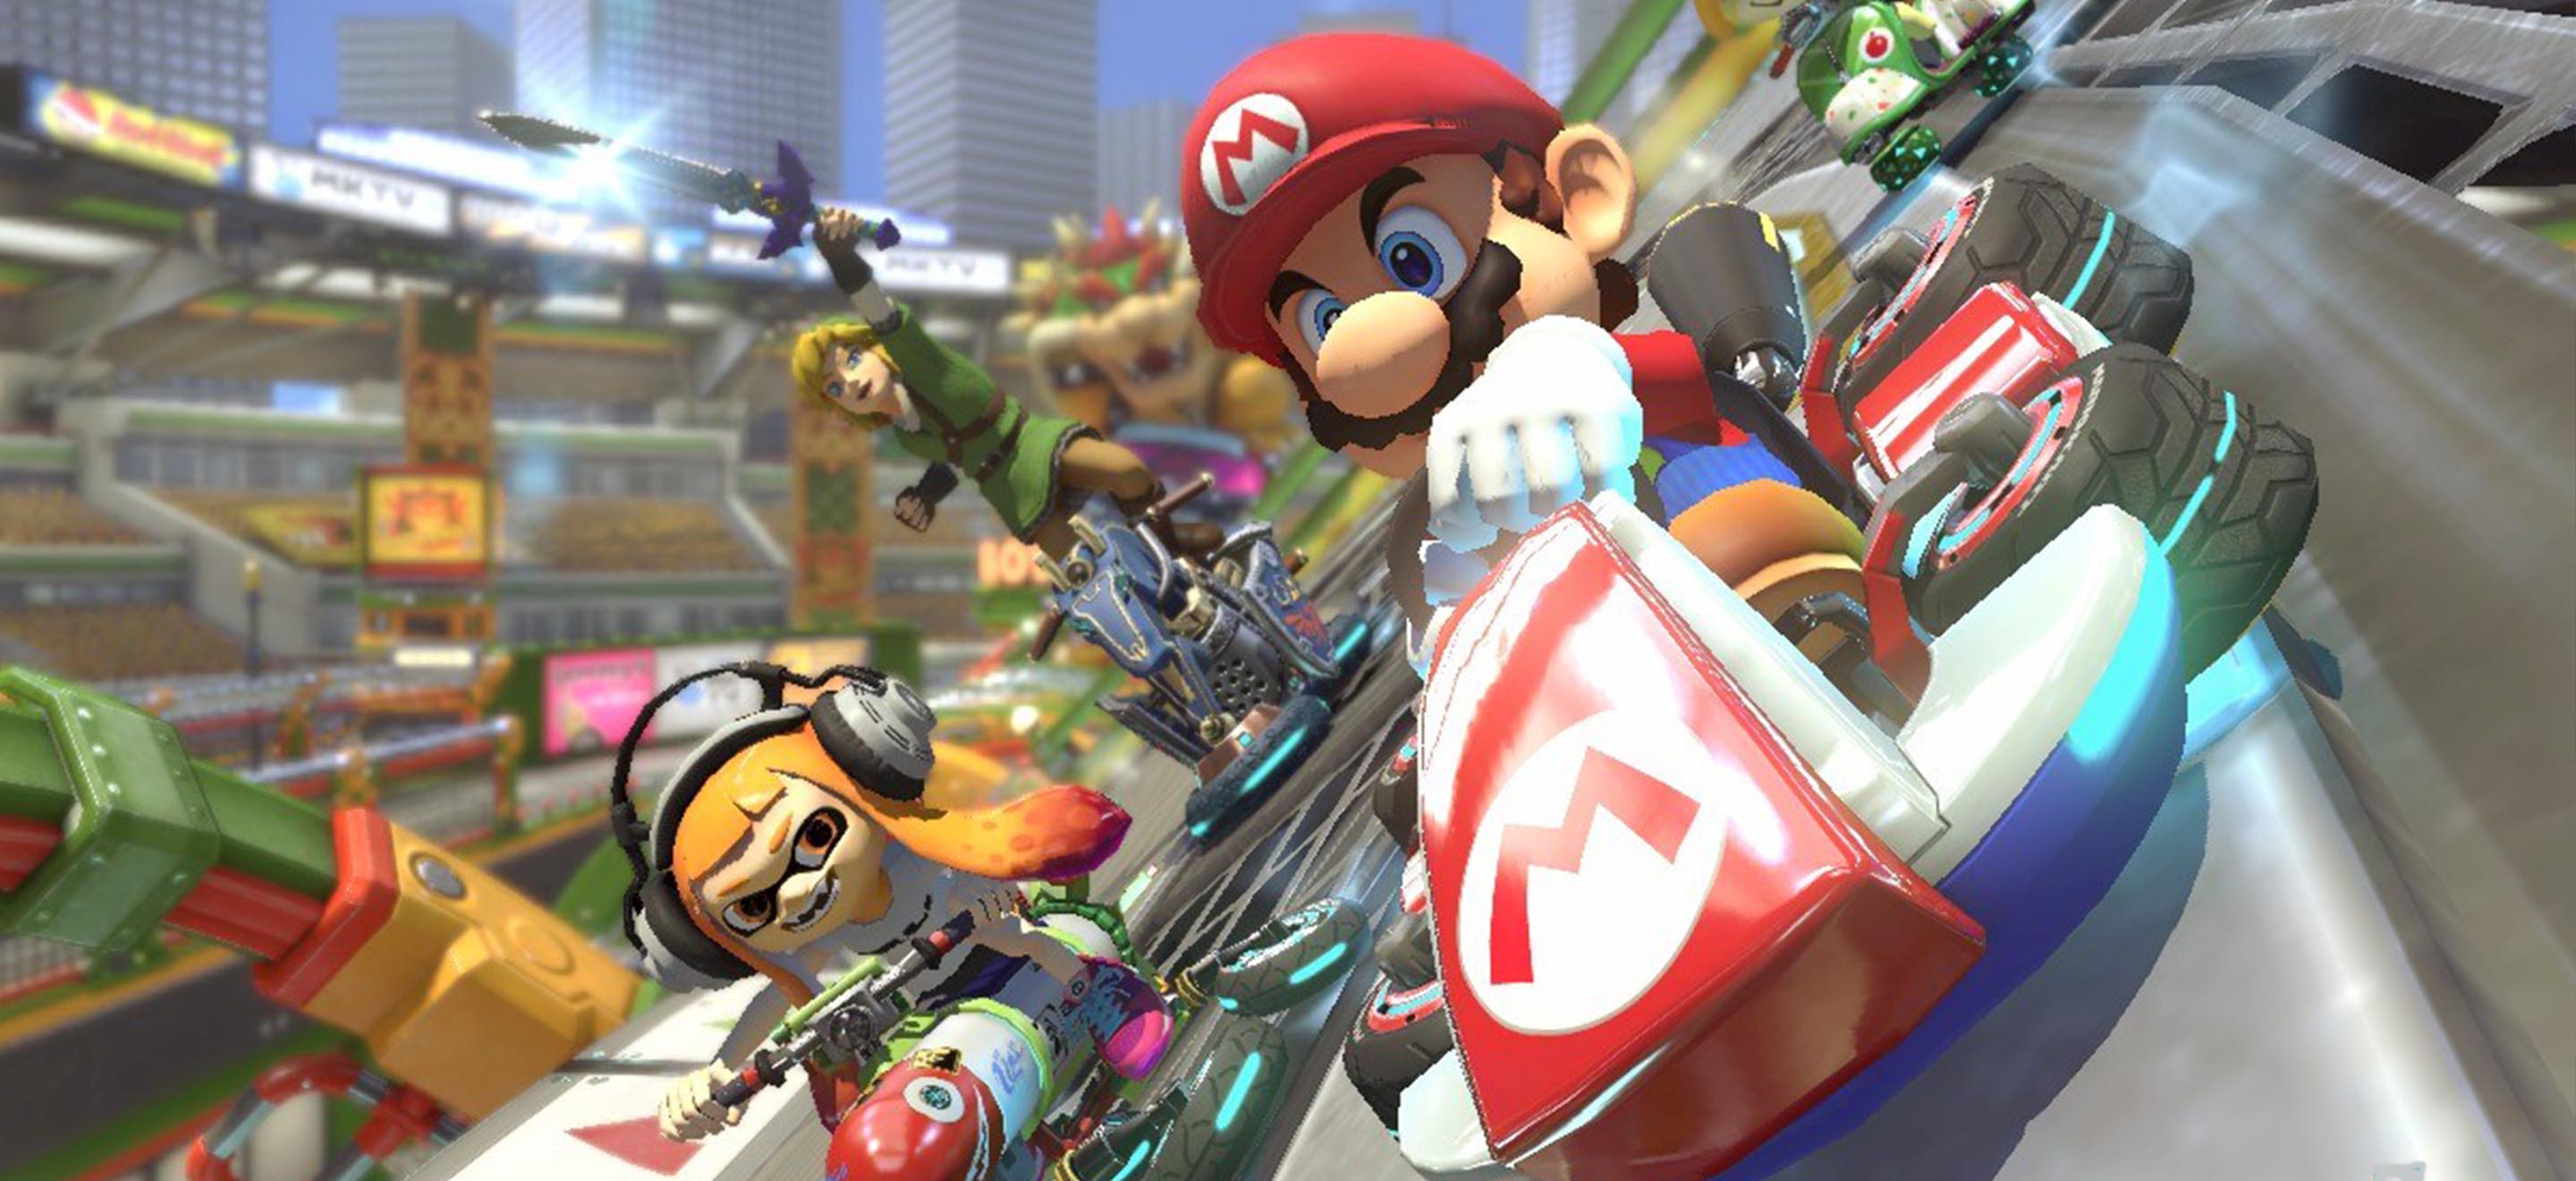 Un nouveau jeu Mario arrive pour la Nintendo Switch (mais peut-être pas  celui que vous imaginiez) - Numerama